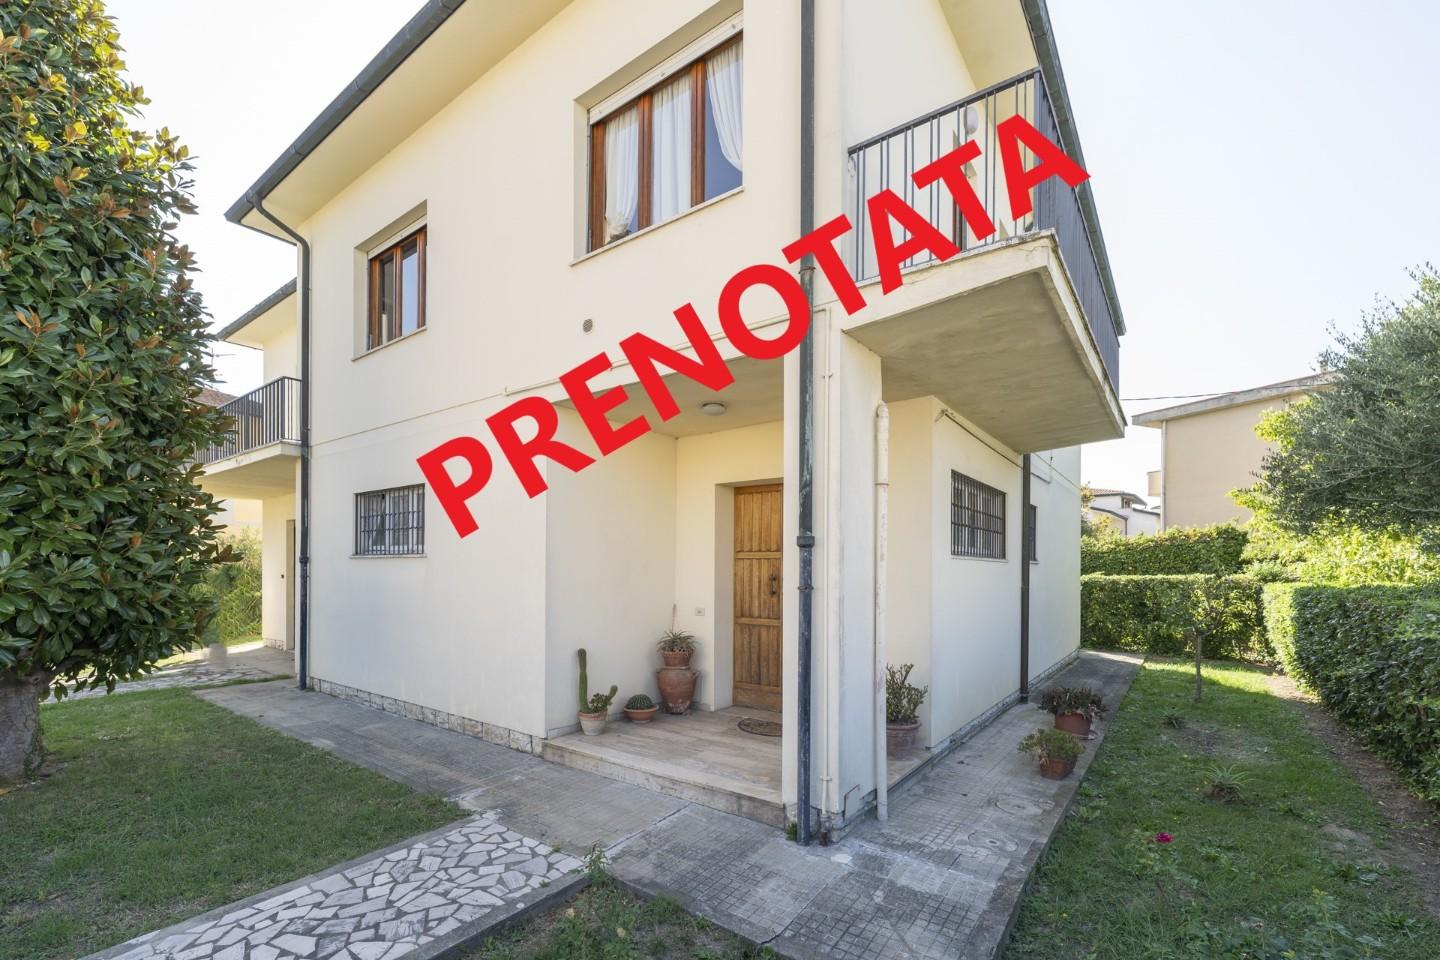 Casa singola in vendita a Casciana Terme Lari